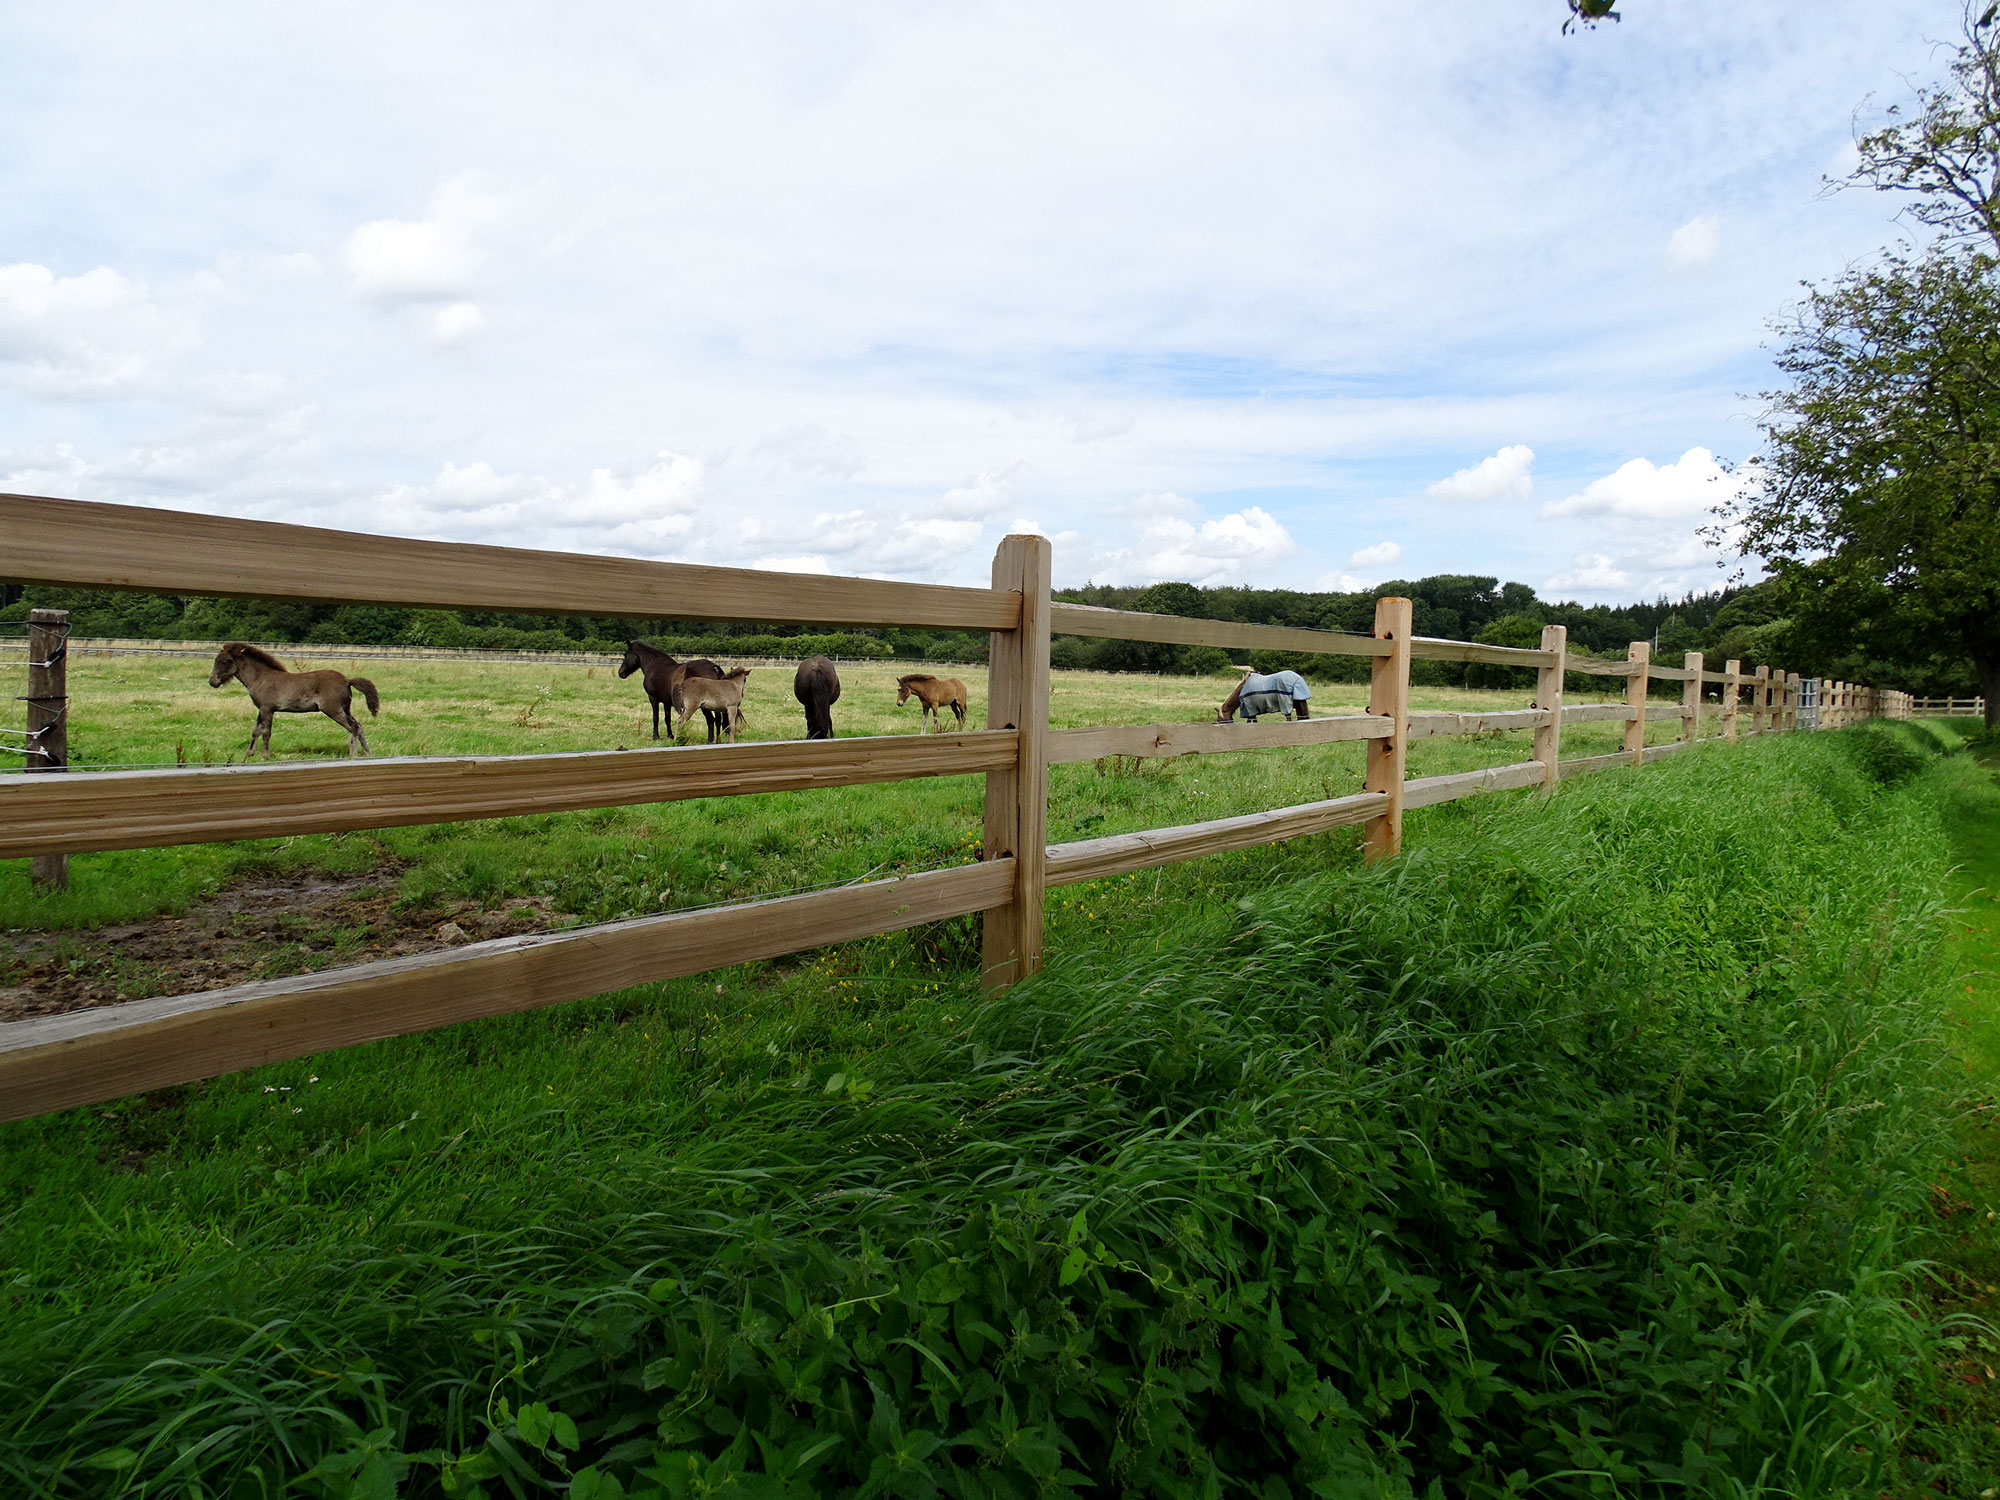 Mellan lamellerna i ett rustikt häststängsel kan man se flera hästar och föl som betar i en hage.